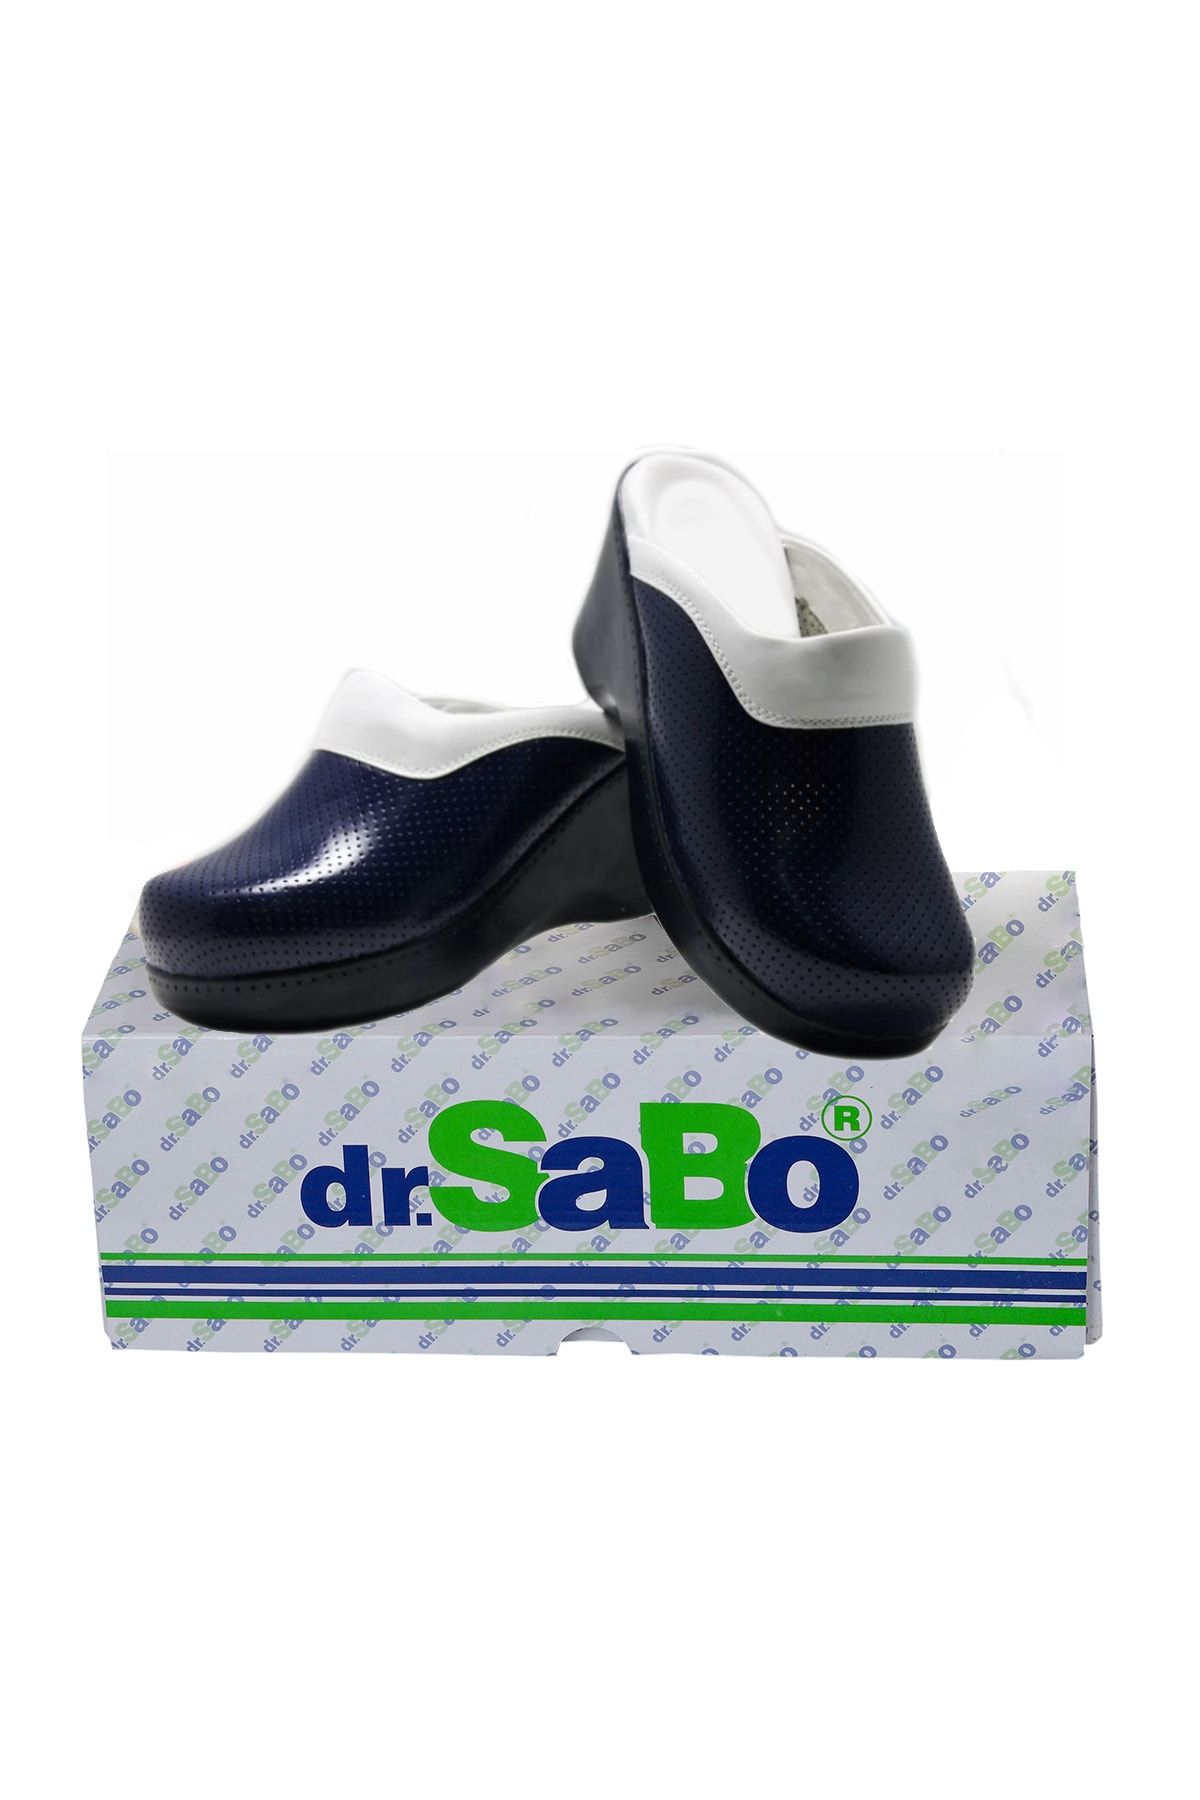 DR SABO Yüksek Topuk Platform Kadın Ortopedik Deri Sabo Terlik